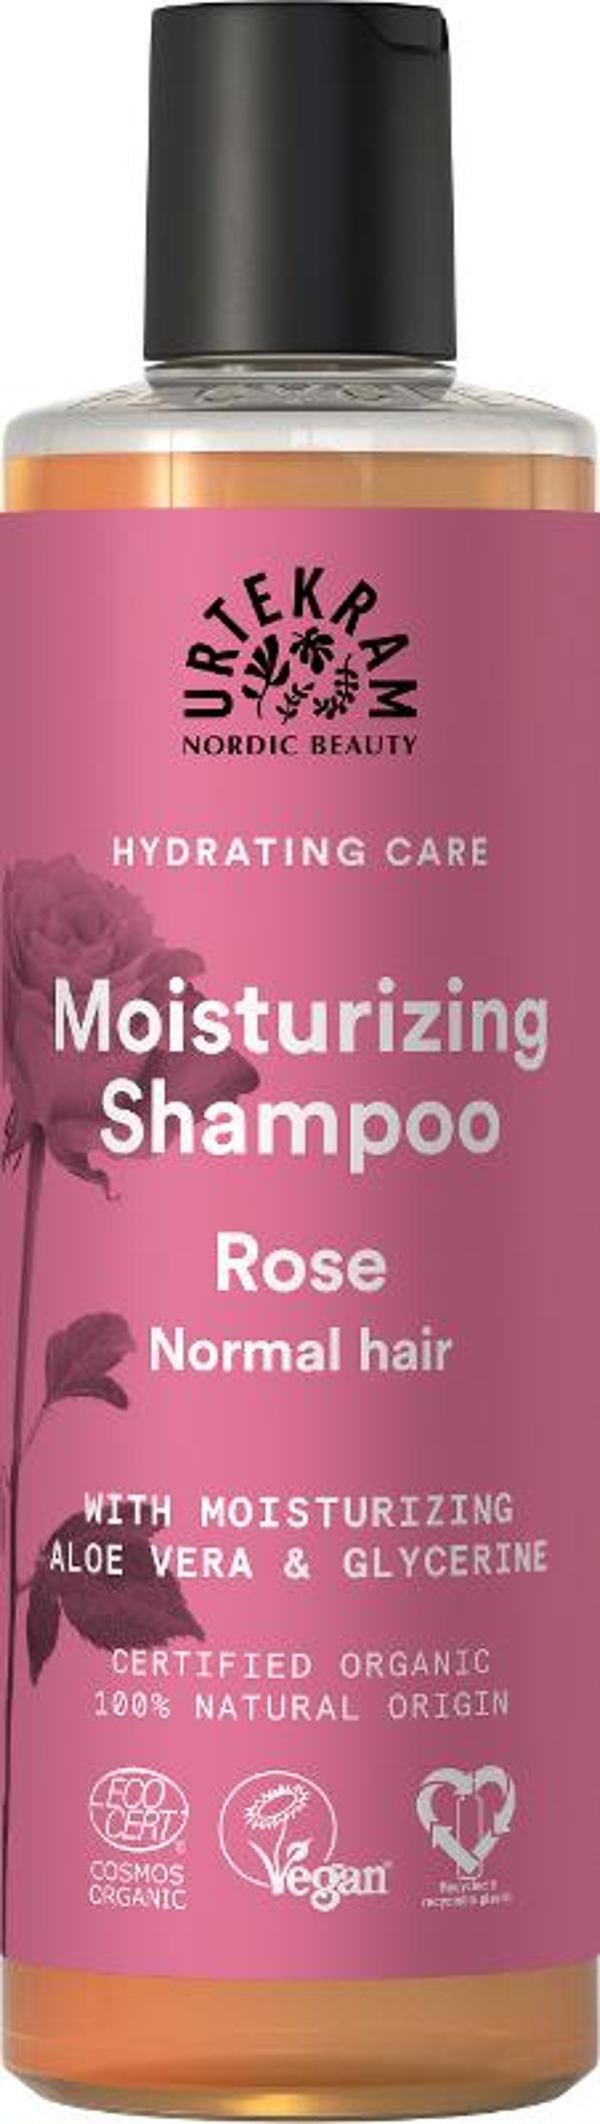 Produktfoto zu Rose Shampoo 250ml Urtekram